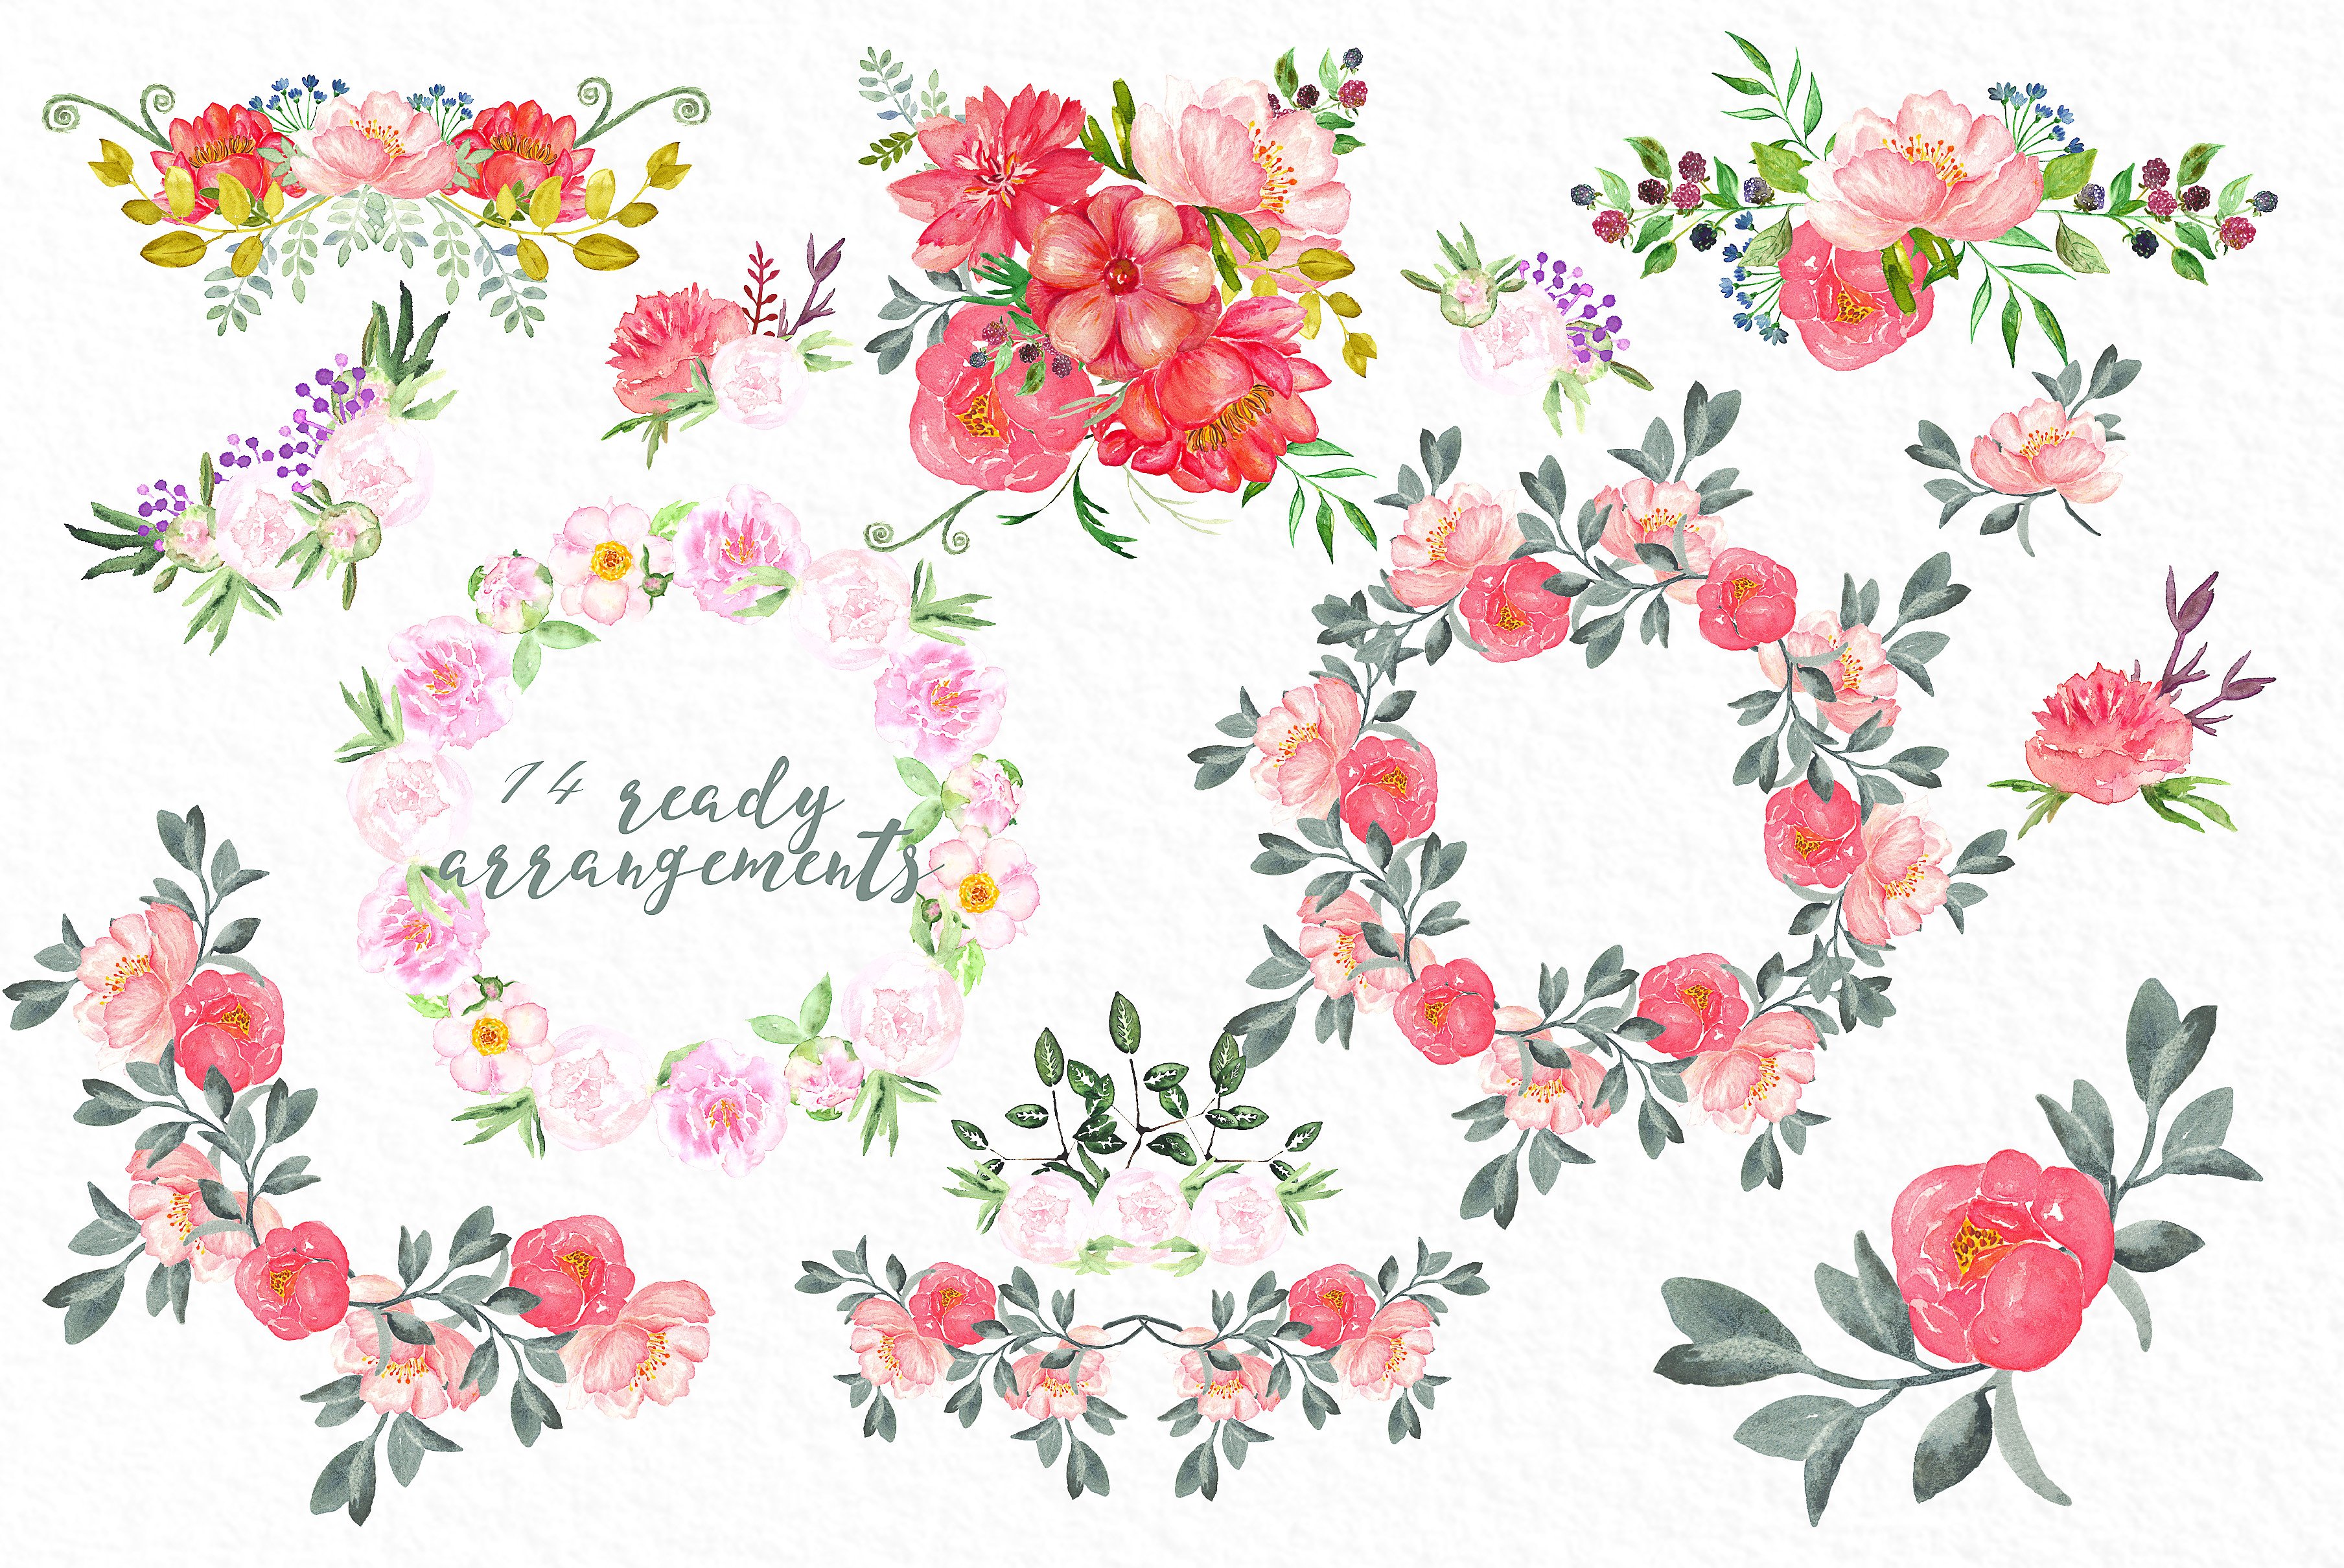 手绘水彩牡丹玫瑰花卉花束设计素材 Peonies-big-c